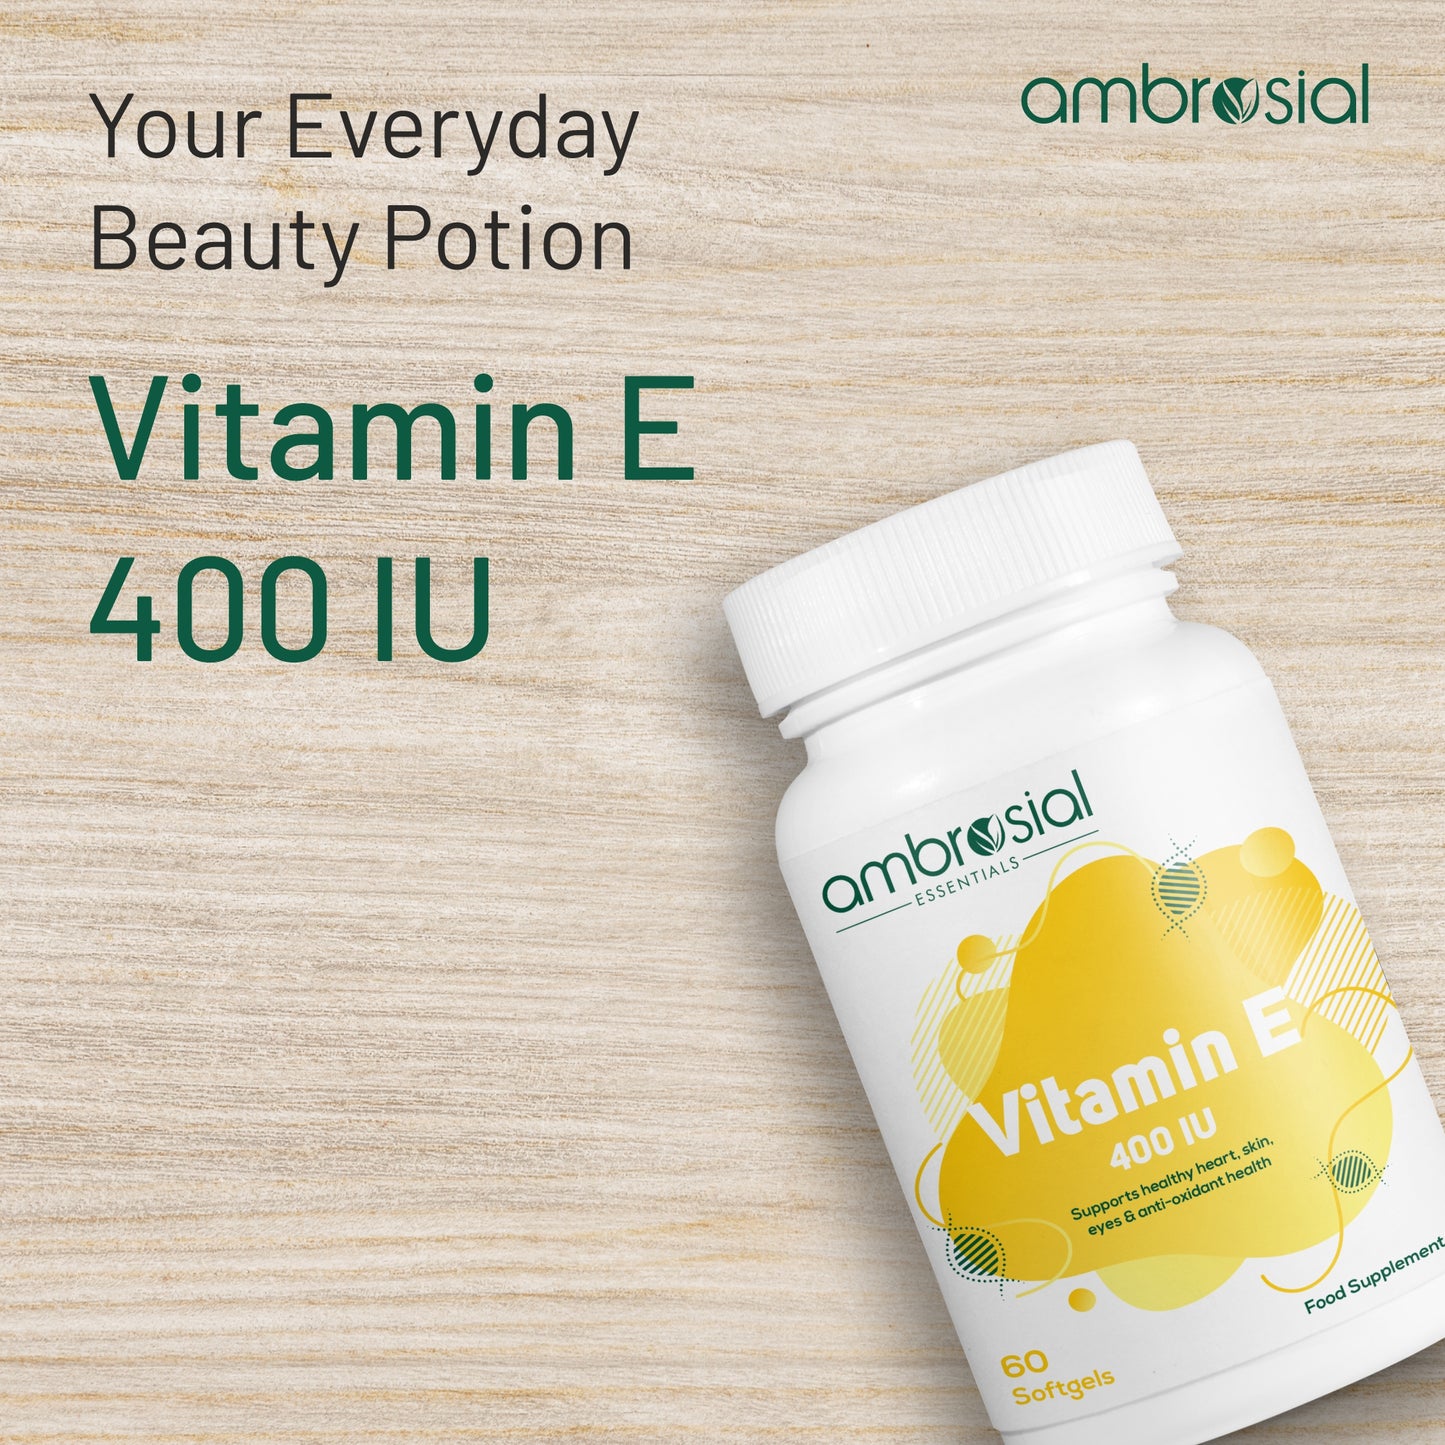 Vitamin E 400 IE